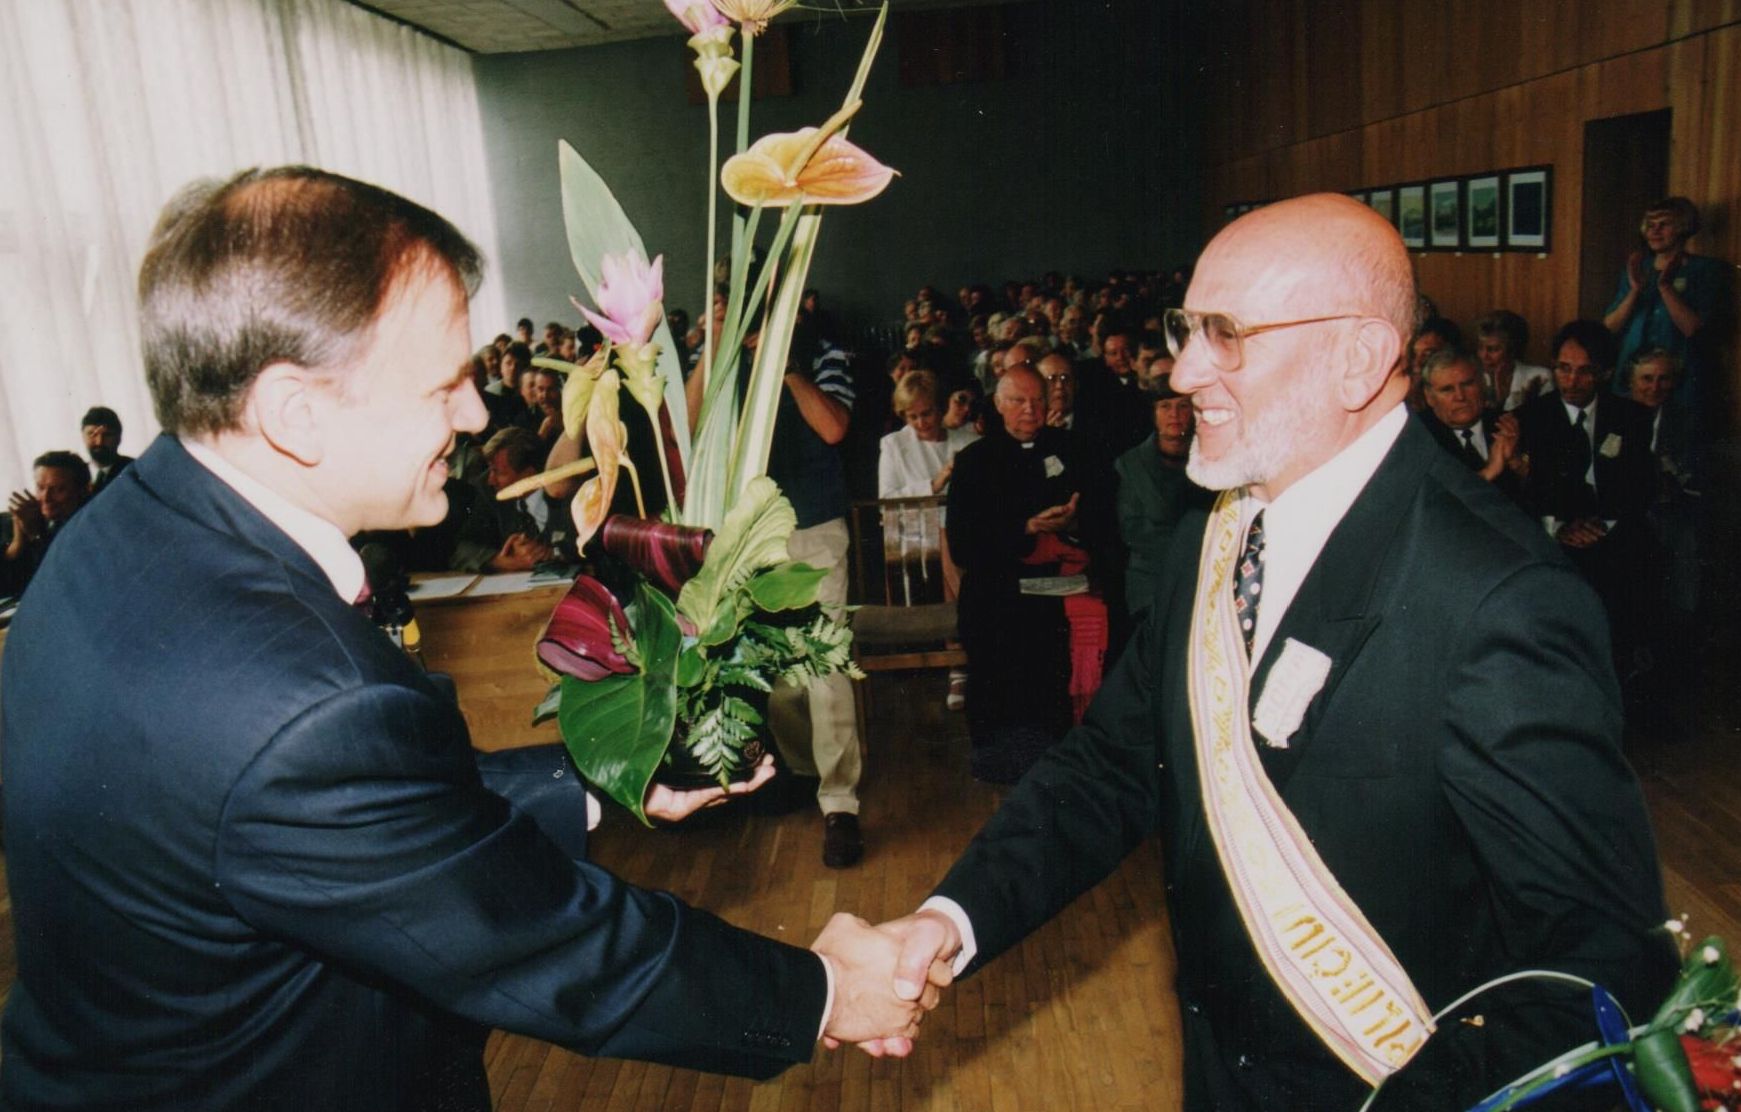 2000 m. rugpjūčio 5 d. Jonavos rajono savivaldybės taryba G. Ilgūnui suteikį Jonavos miesto Garbės piliečio vardą. Su garbingu įvertinimu sveikina senas bičiulis, Lietuvos socialdemokratų partijos pirmininkas V. Andriukaitis.